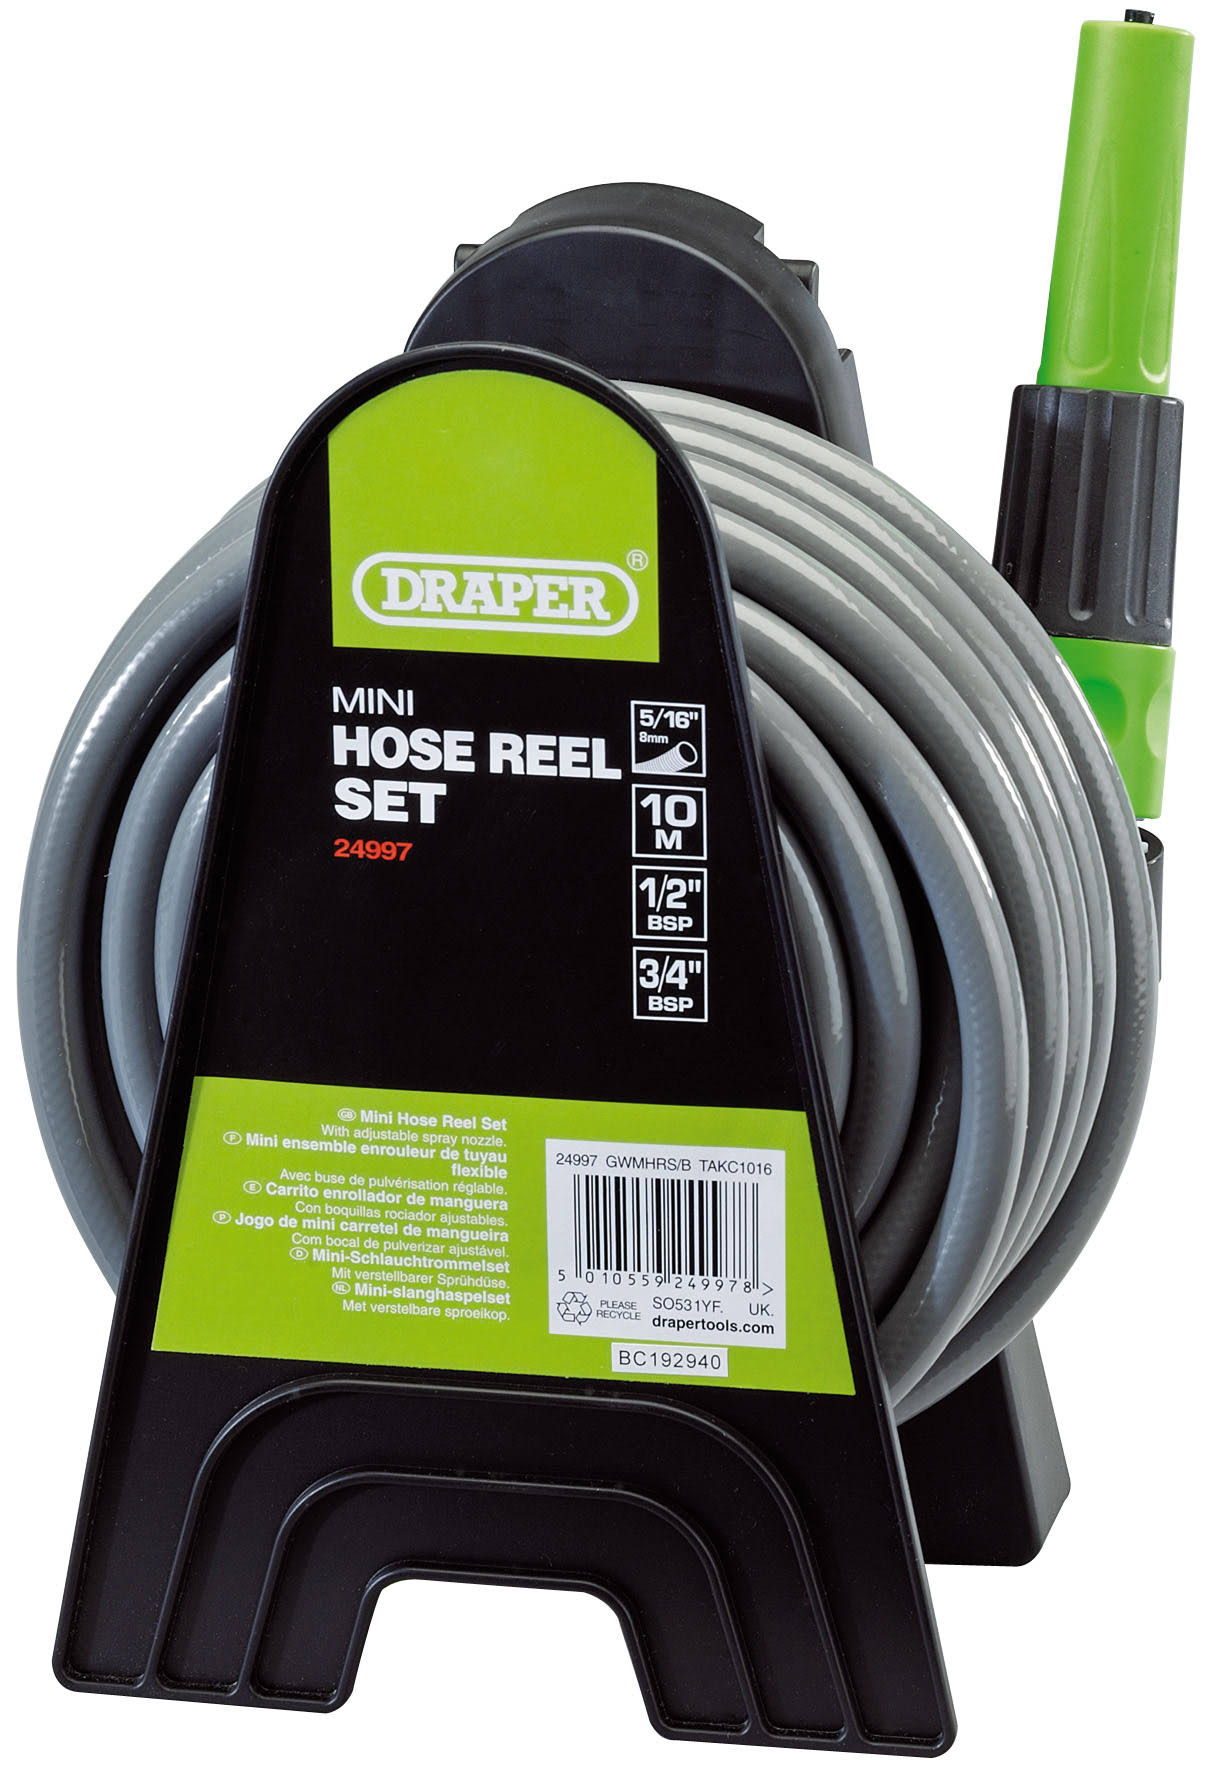 Draper 24997 Mini Hose Reel Set (10M)